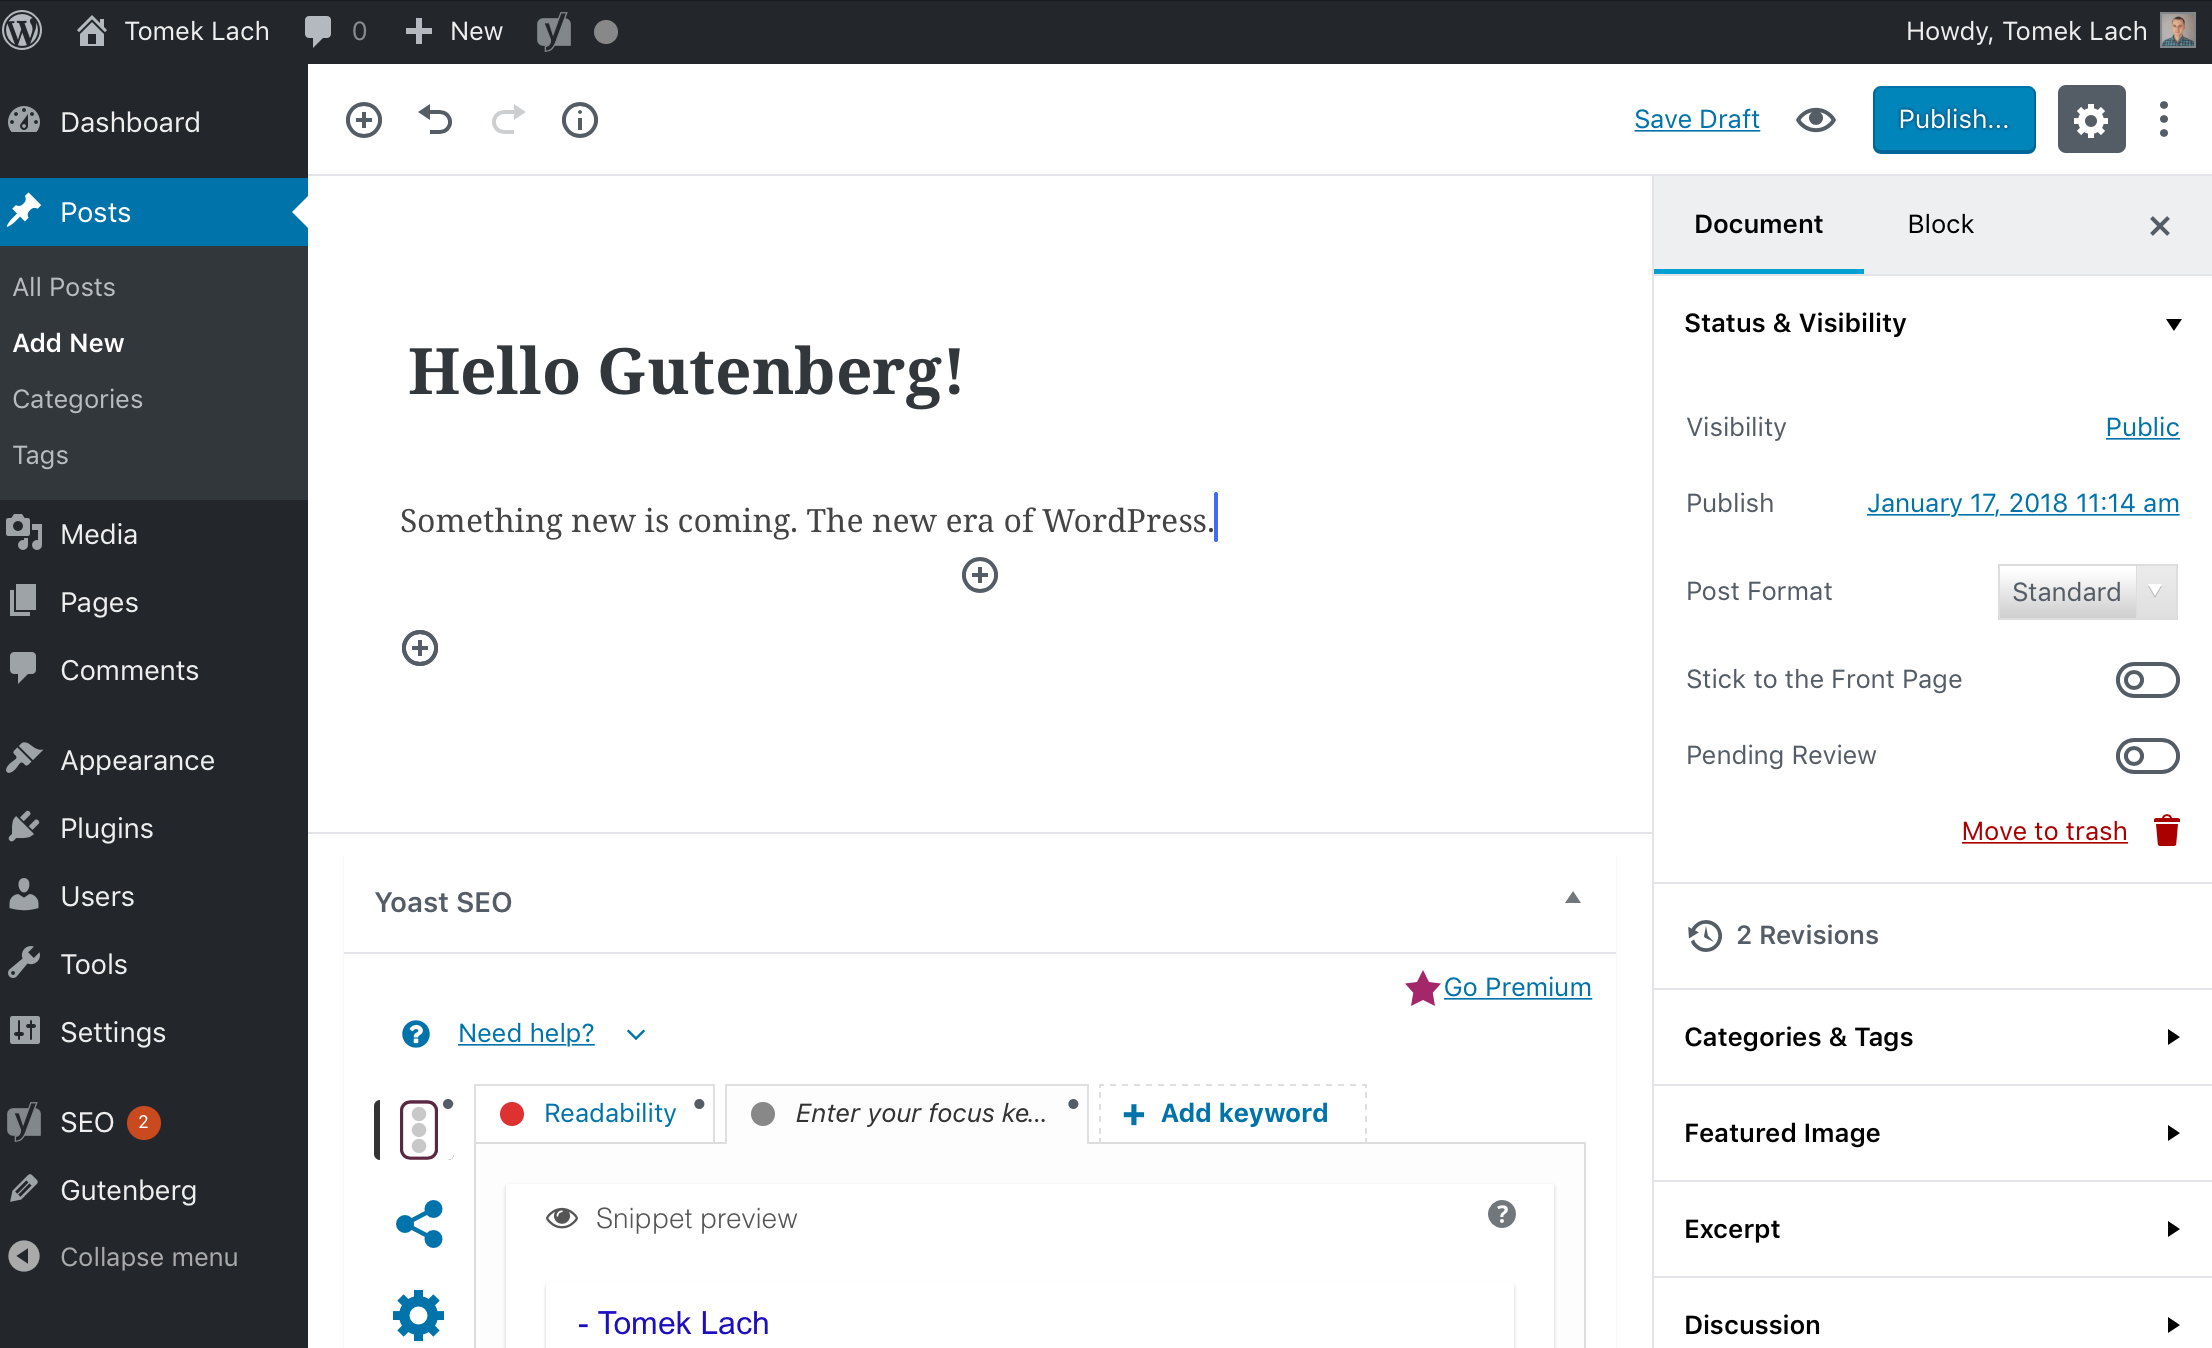 Gutenberg - WordPress new era